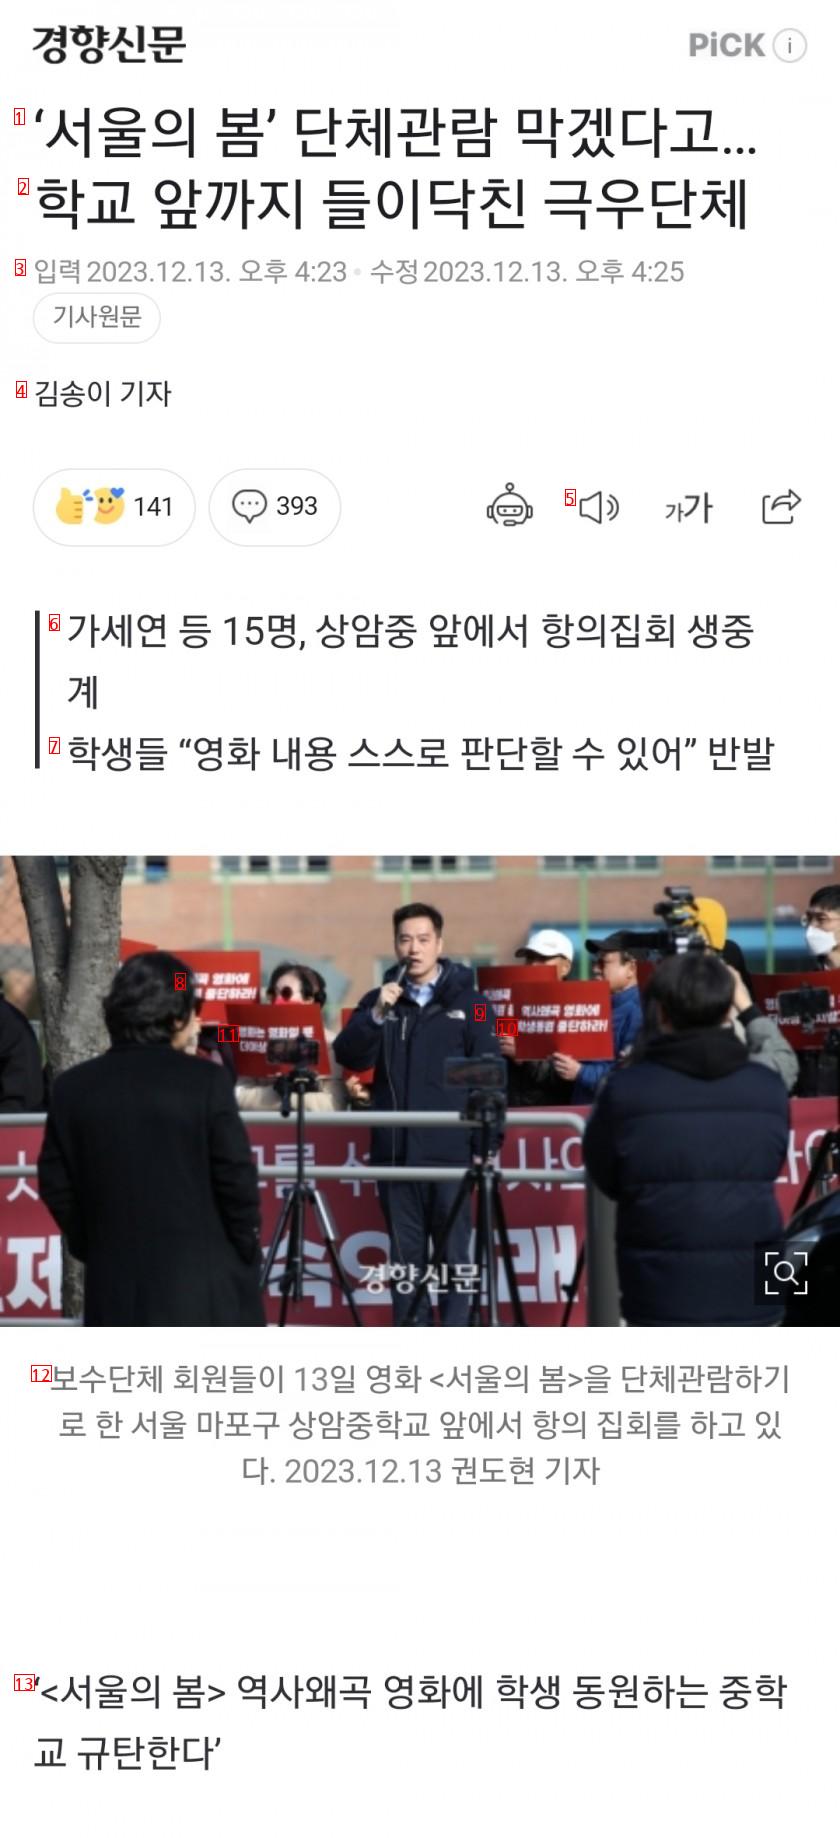 ‘서울의 봄’ 단체관람 막겠다고 학교 앞까지 들이닥친 극우단체